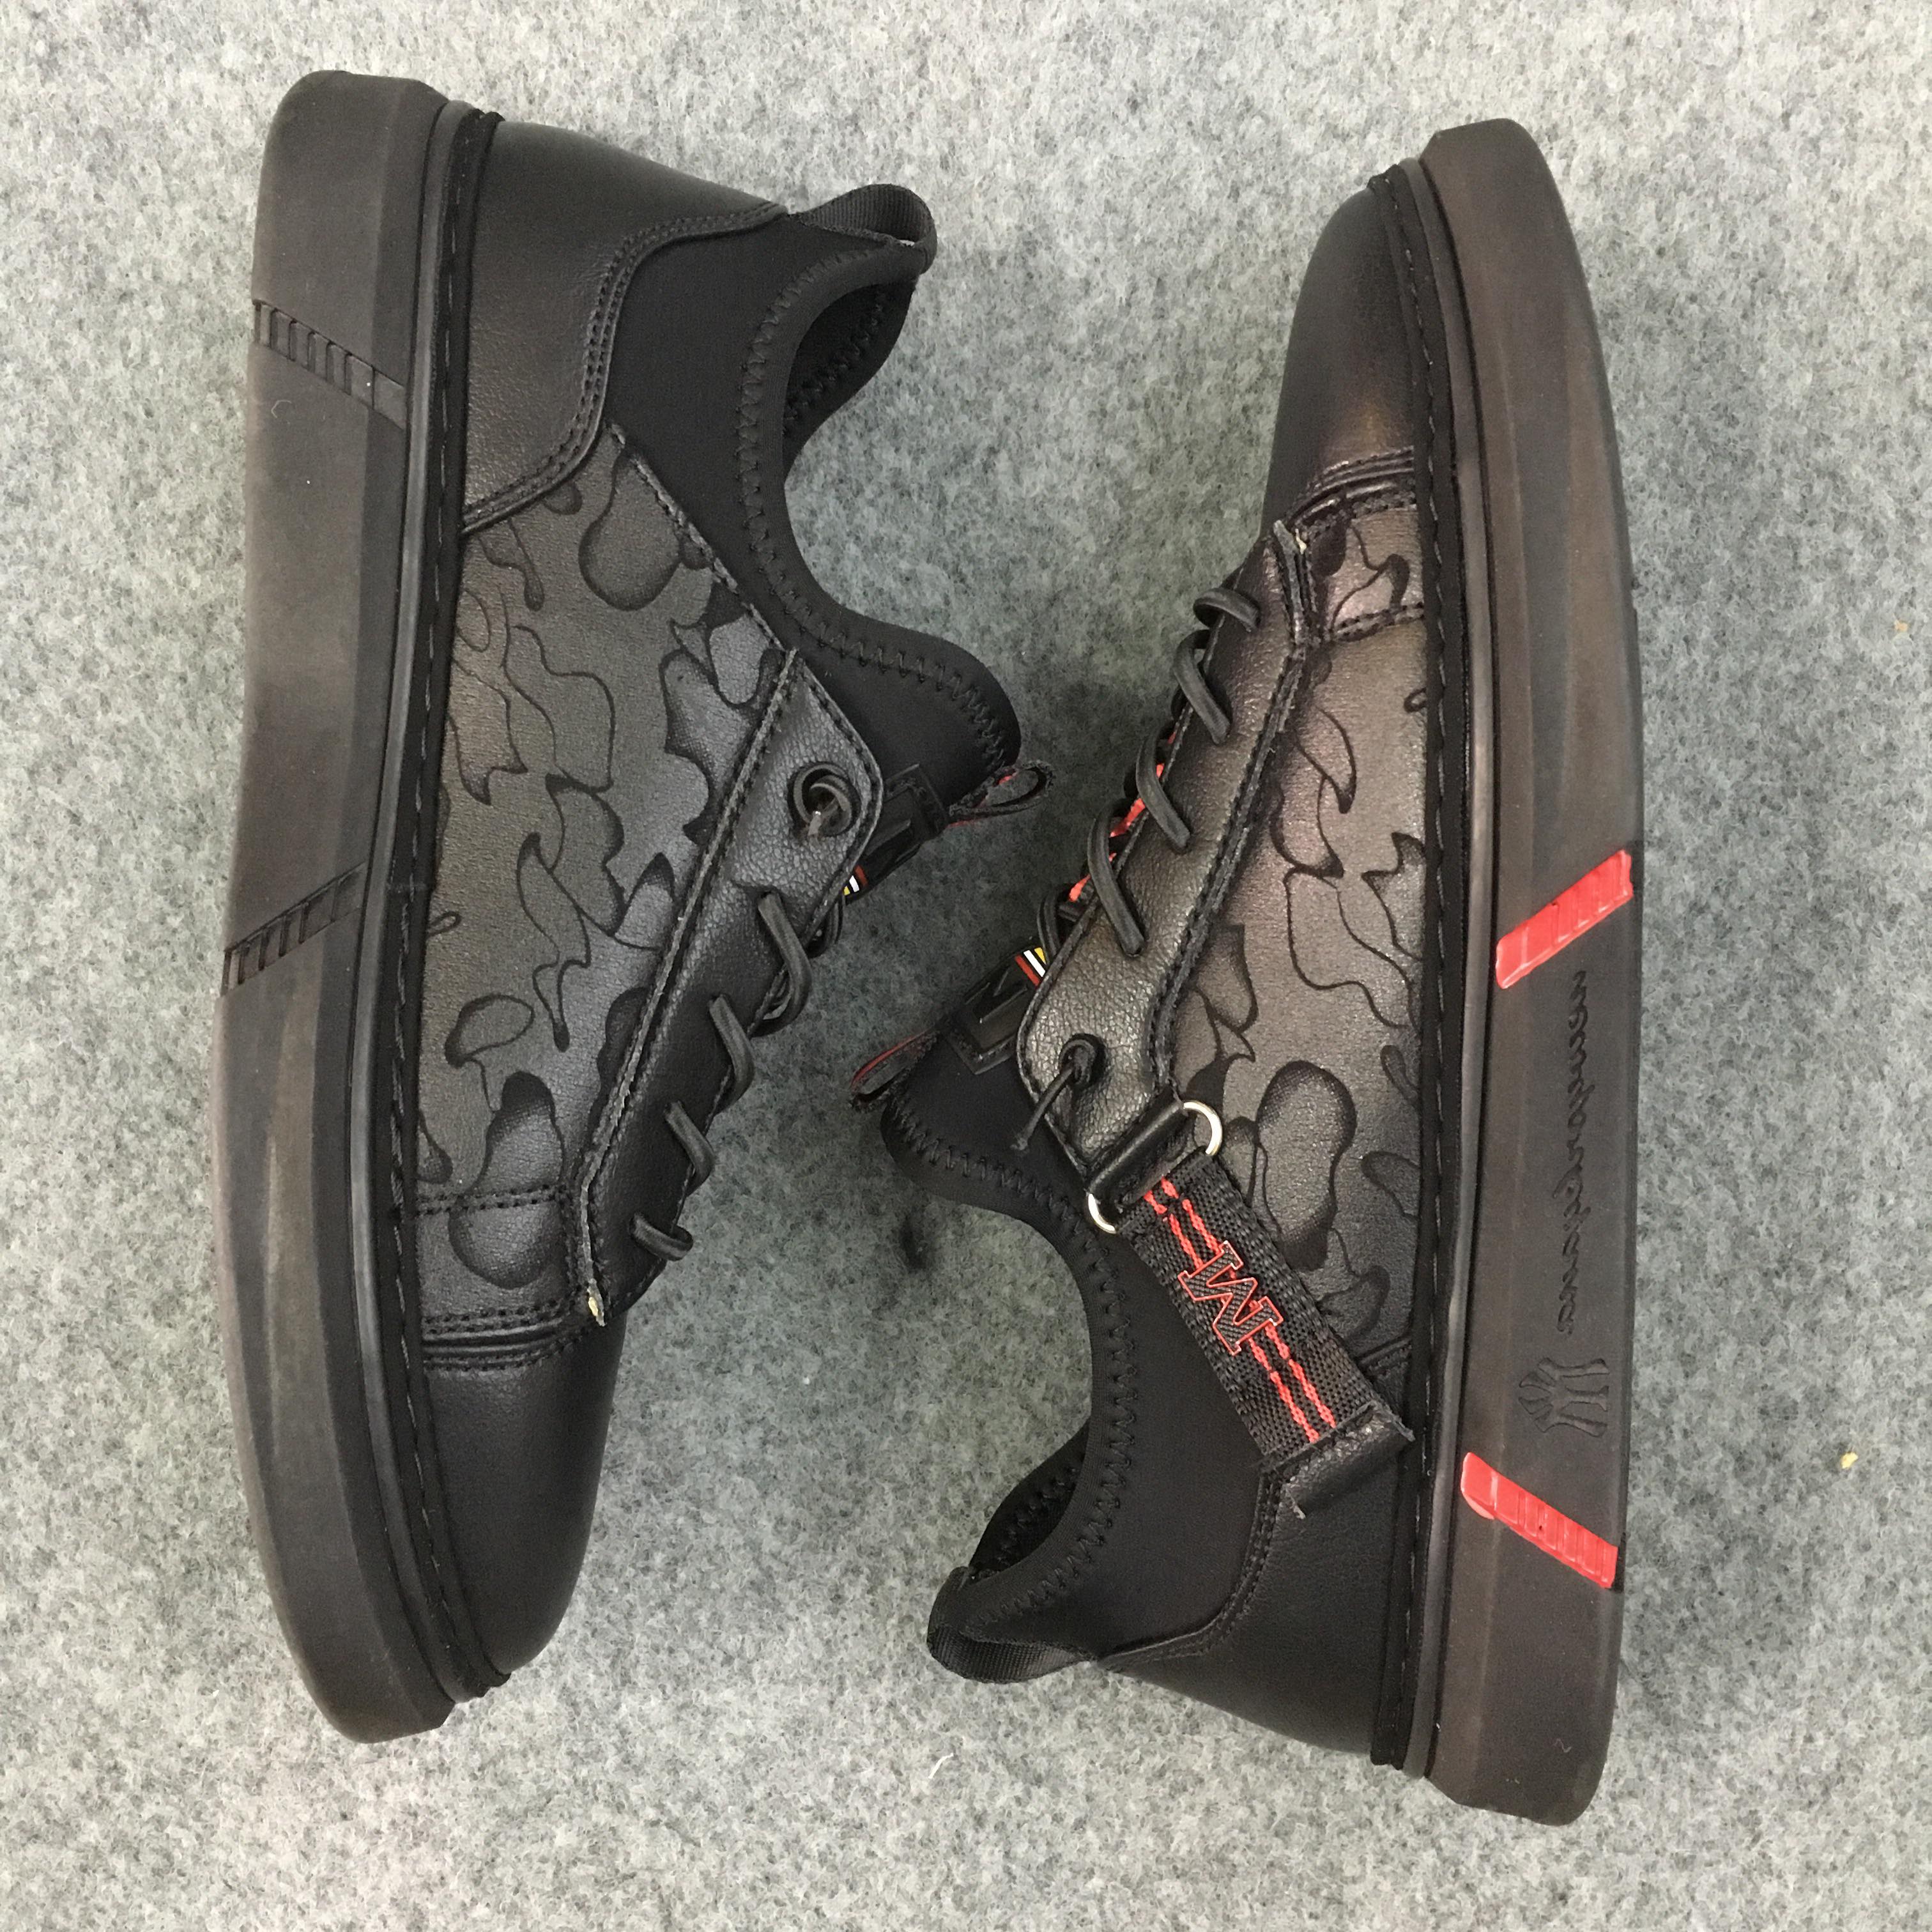 Giày sneakers nam NXC 9252 đen đỏ